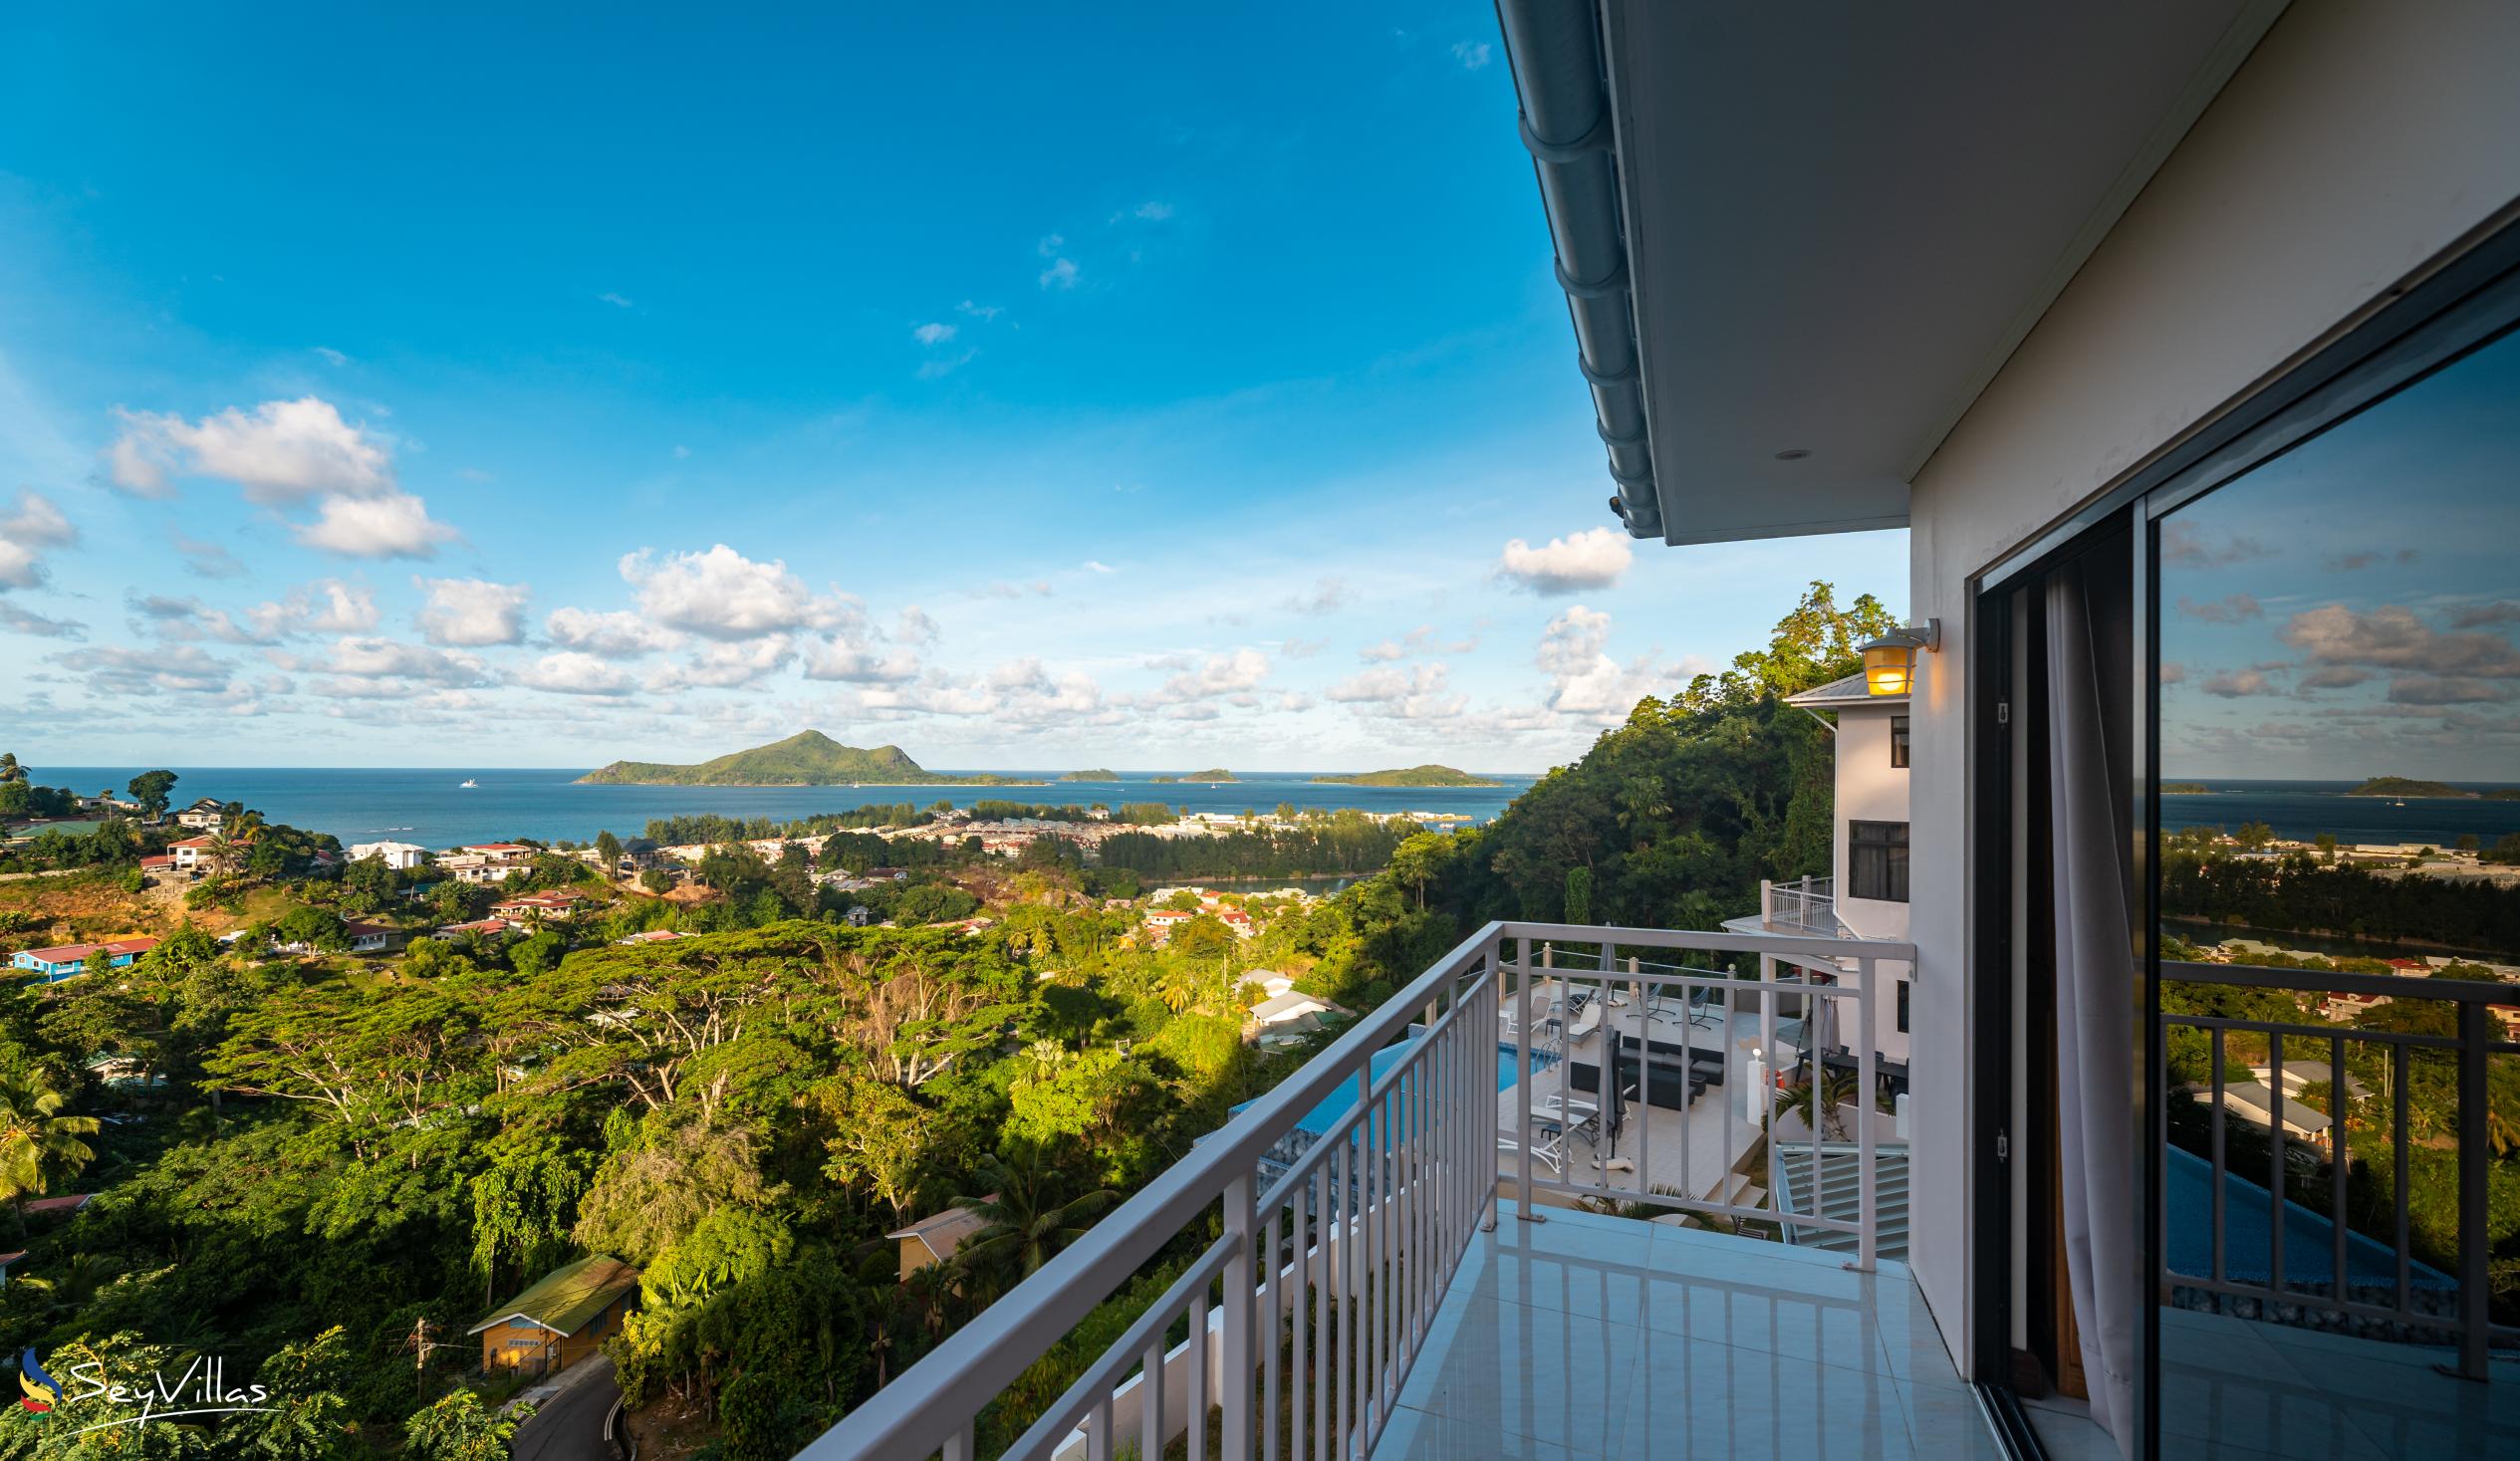 Foto 26: Maison L'Horizon - Appartement 1 chambre Zekler - Mahé (Seychelles)